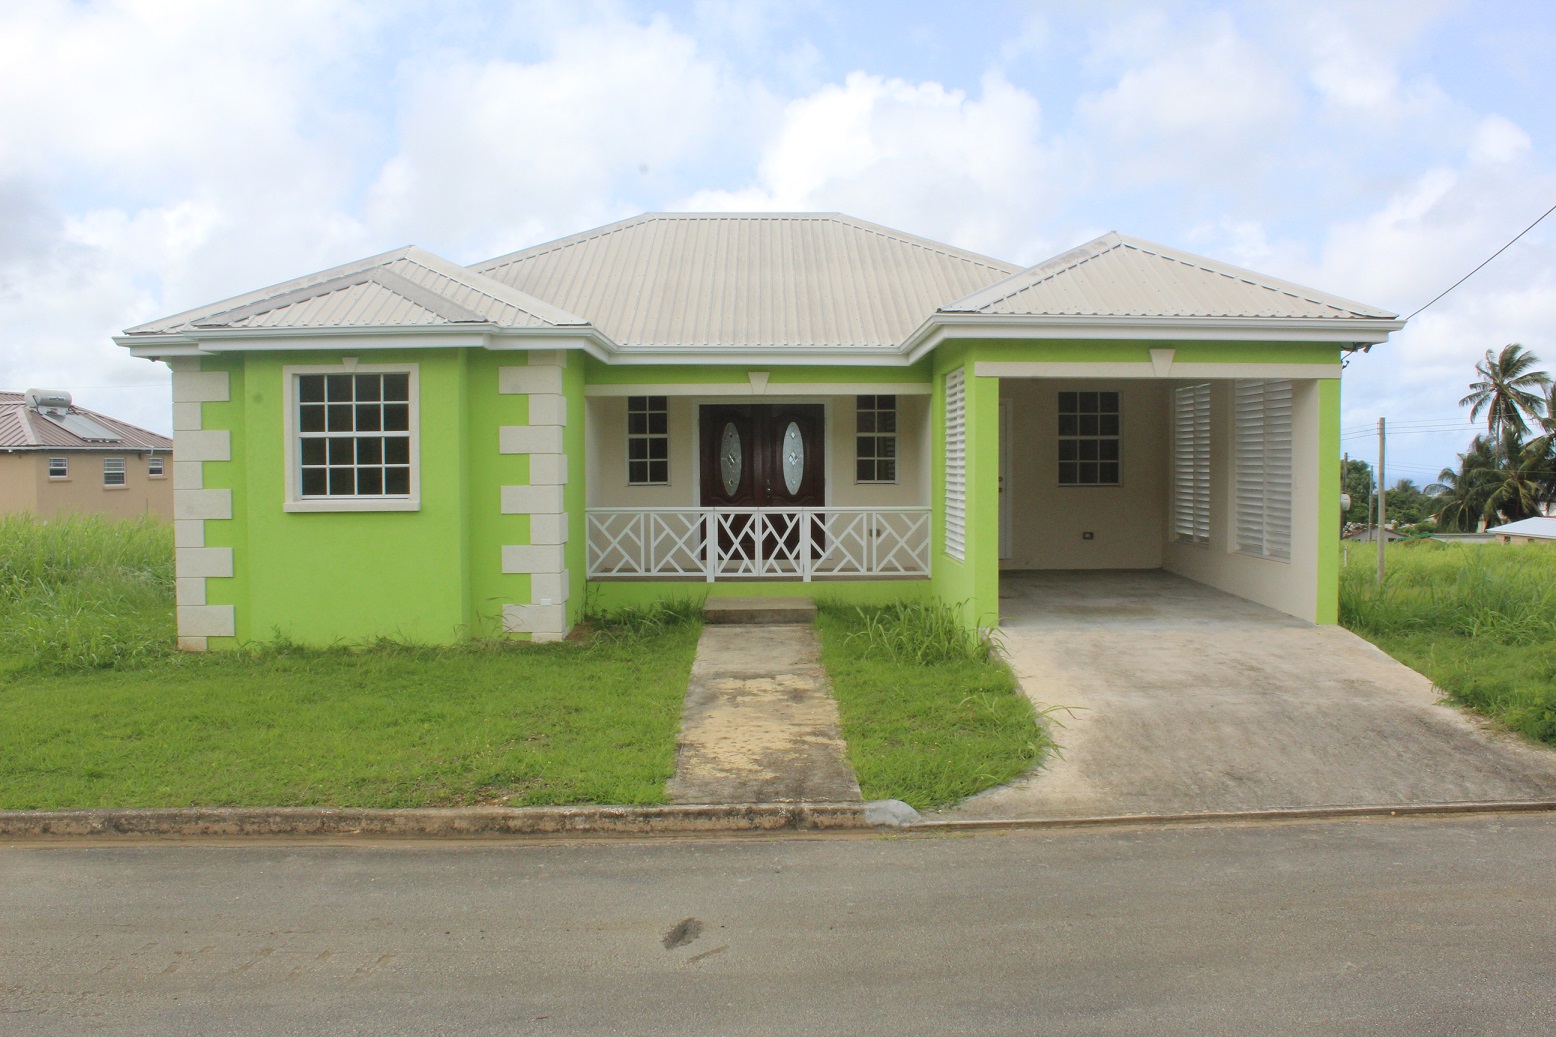 Ayshford Estates, Lot 67, 1st Avenue, St. Thomas, Barbados